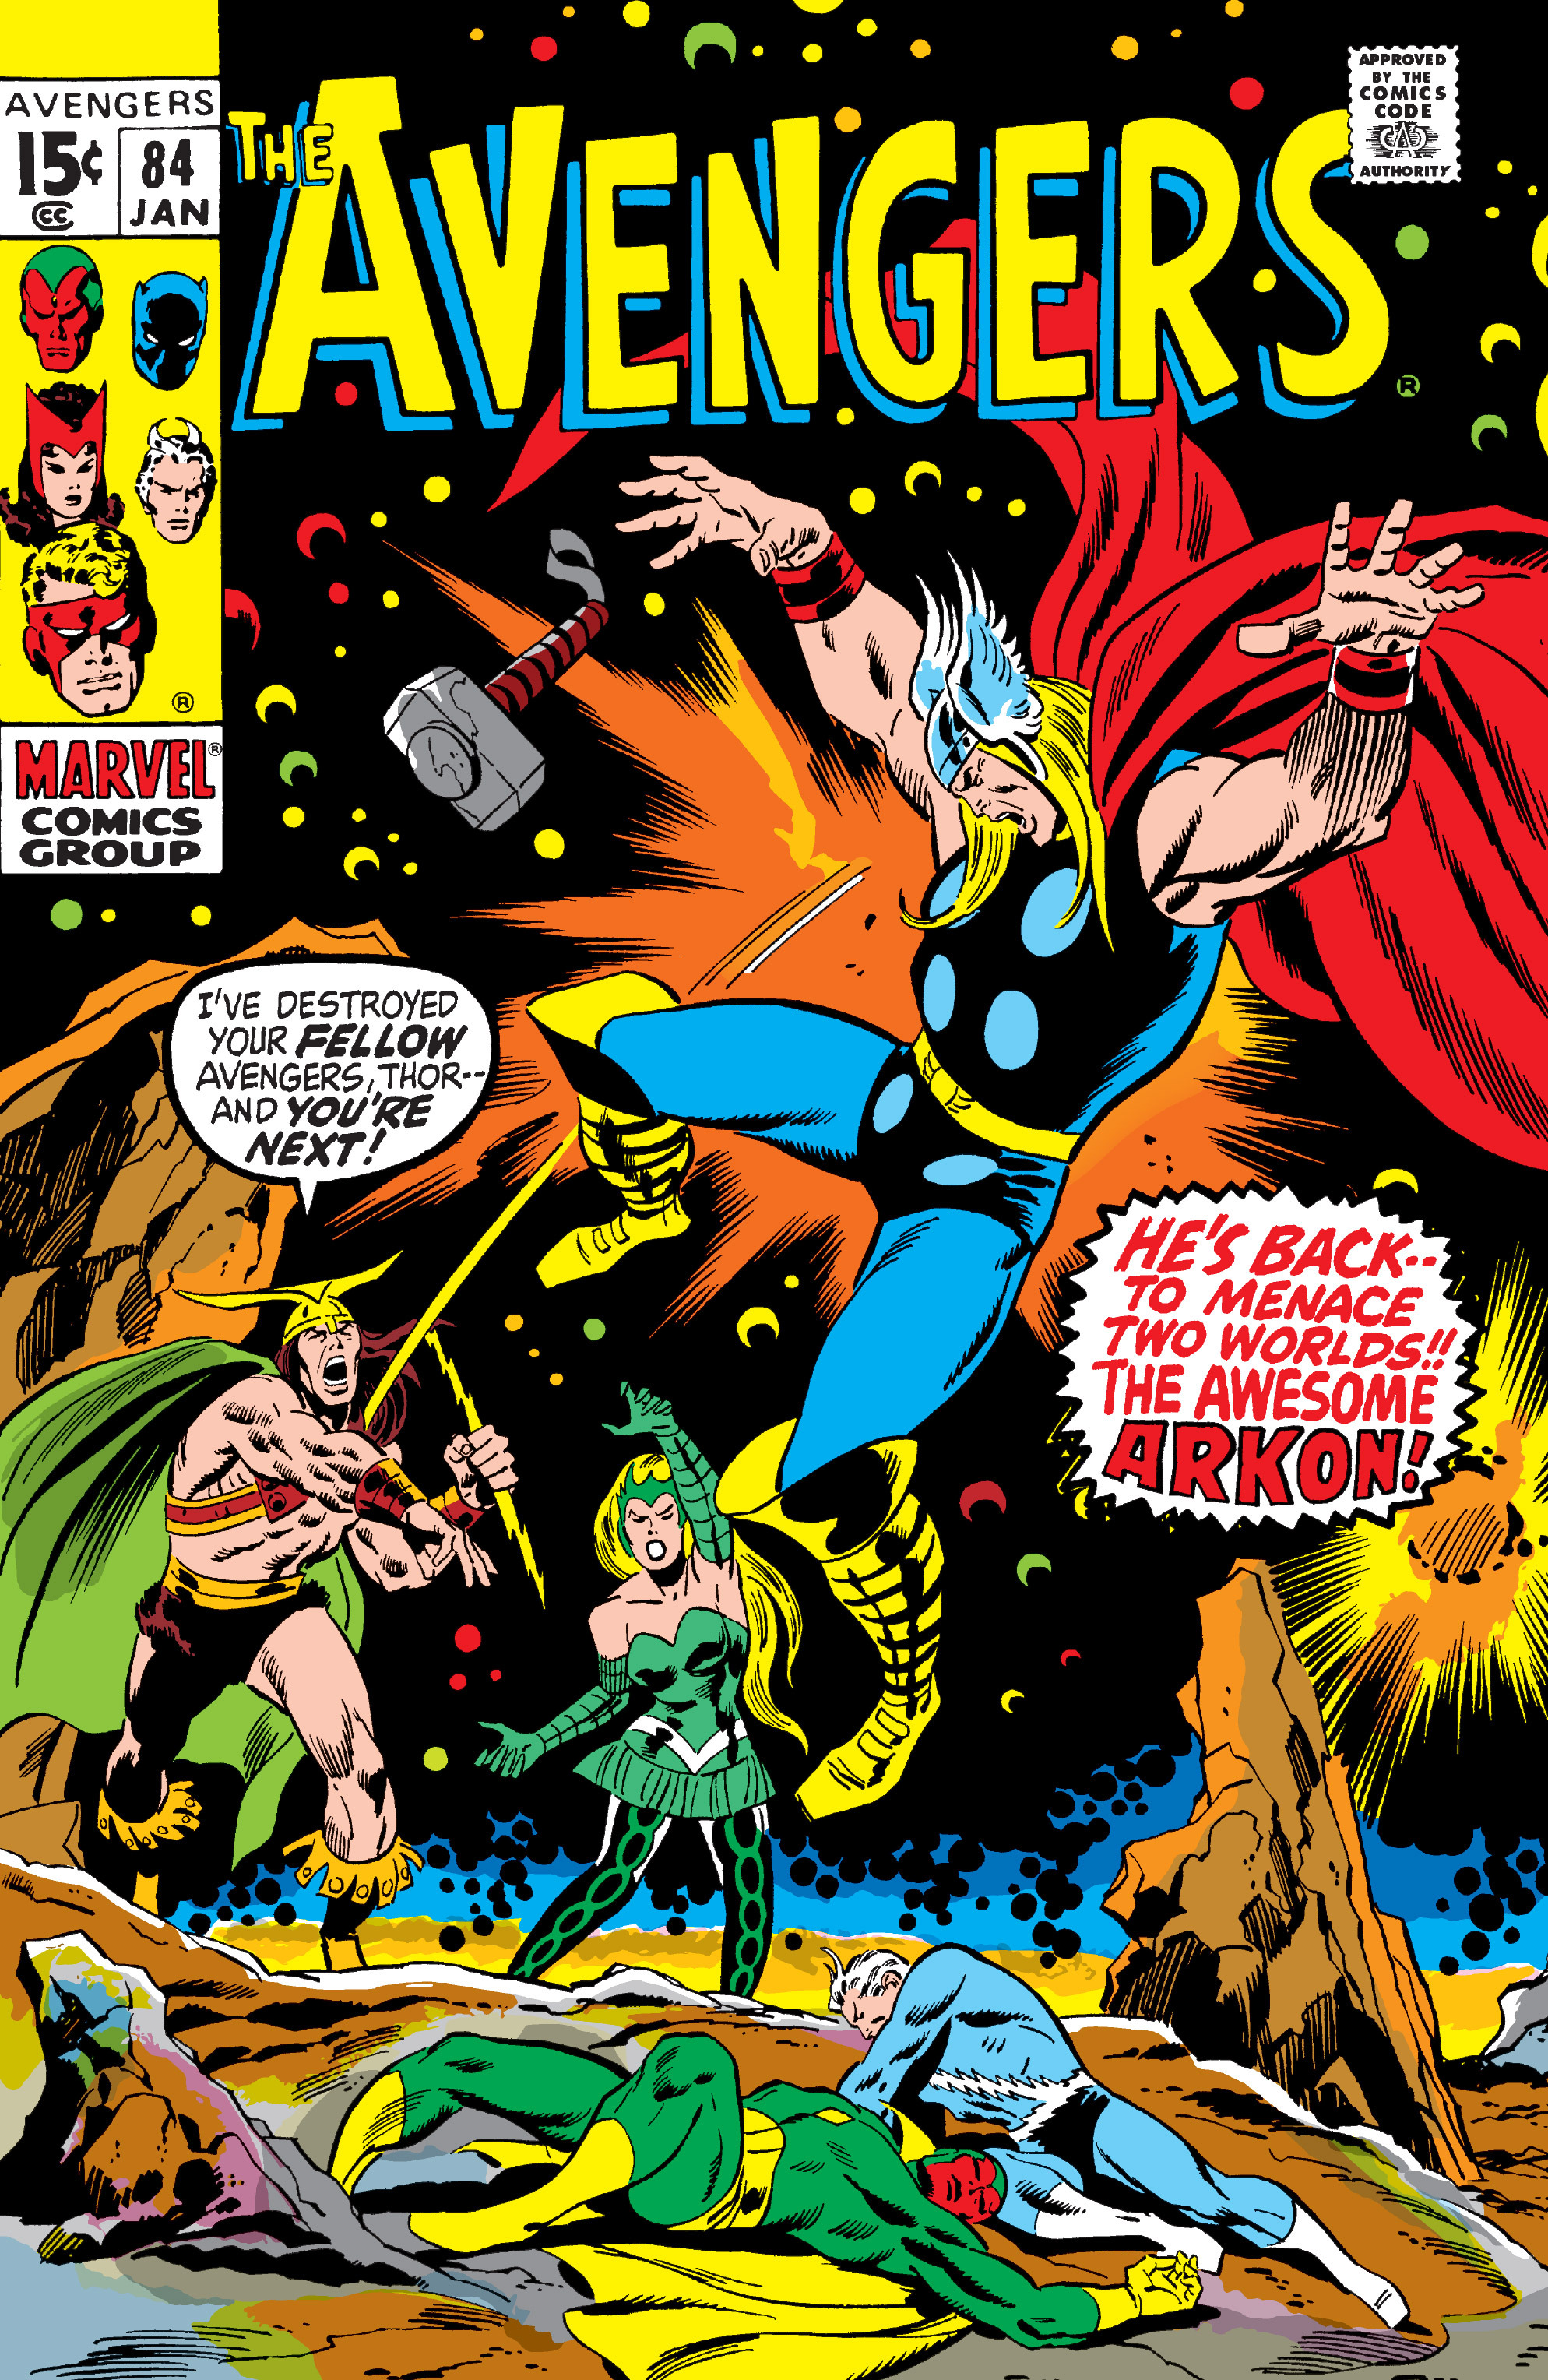 Avengers Vol 1 84 | Marvel Database | Fandom